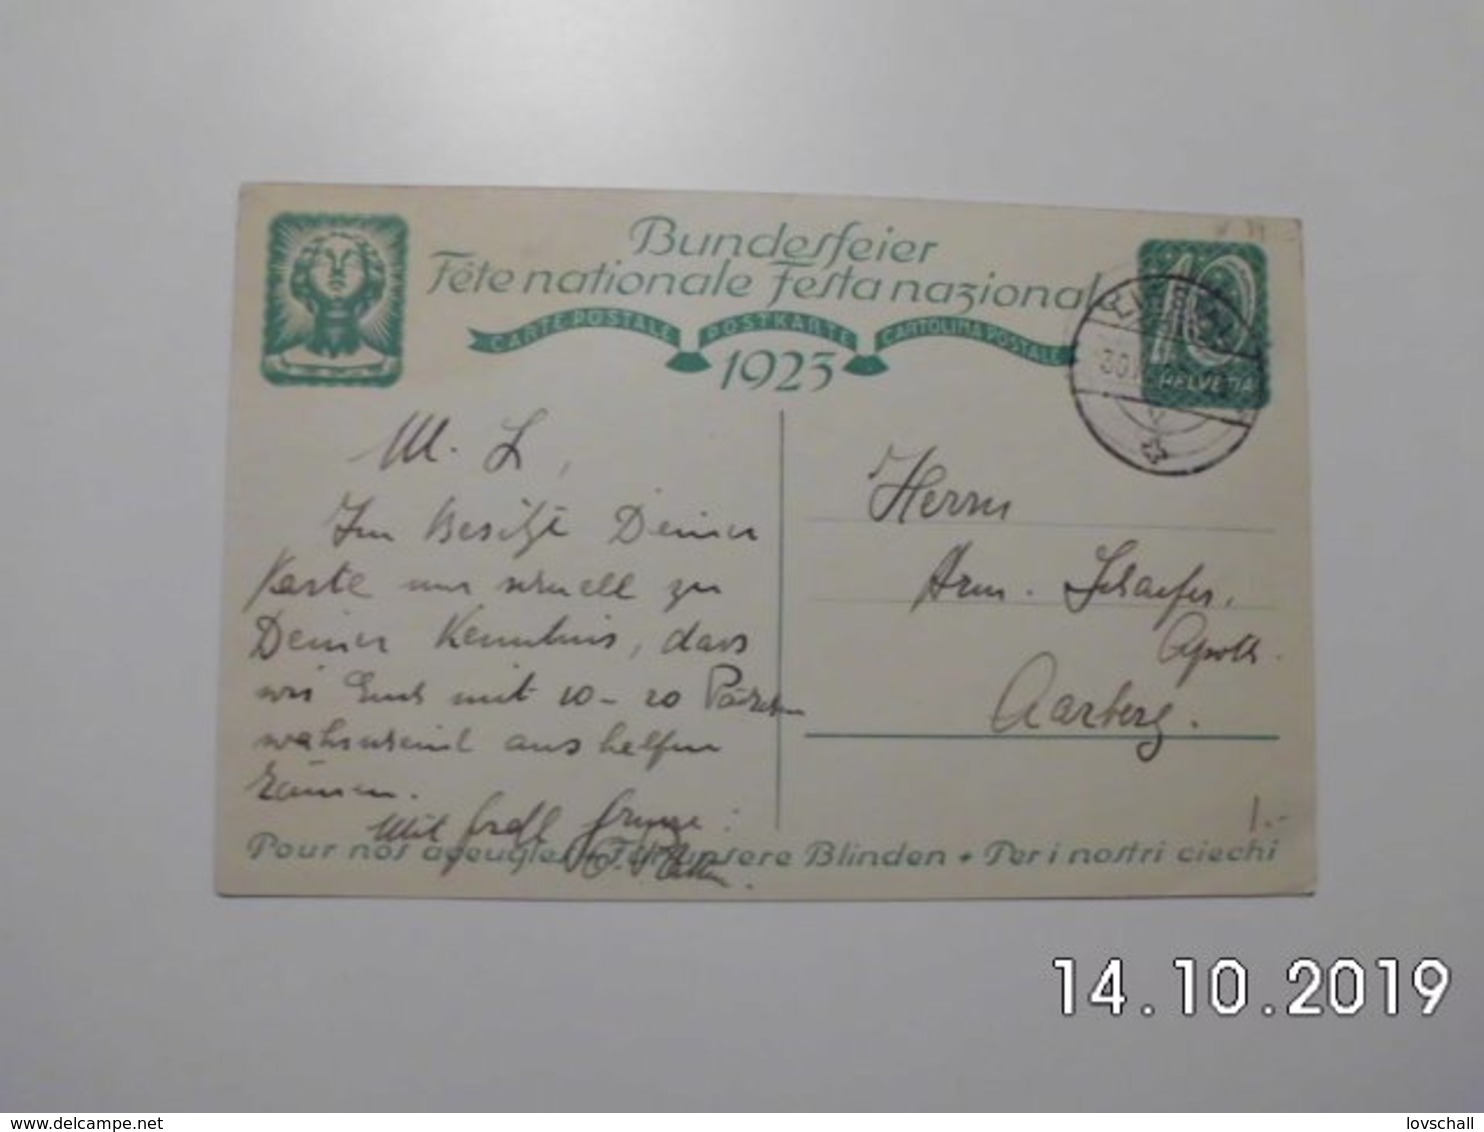 Bundesfeier-Postkarte. 1923. Stempel: Liestal. - BL.  (30 - 8 - 1923) - Liestal